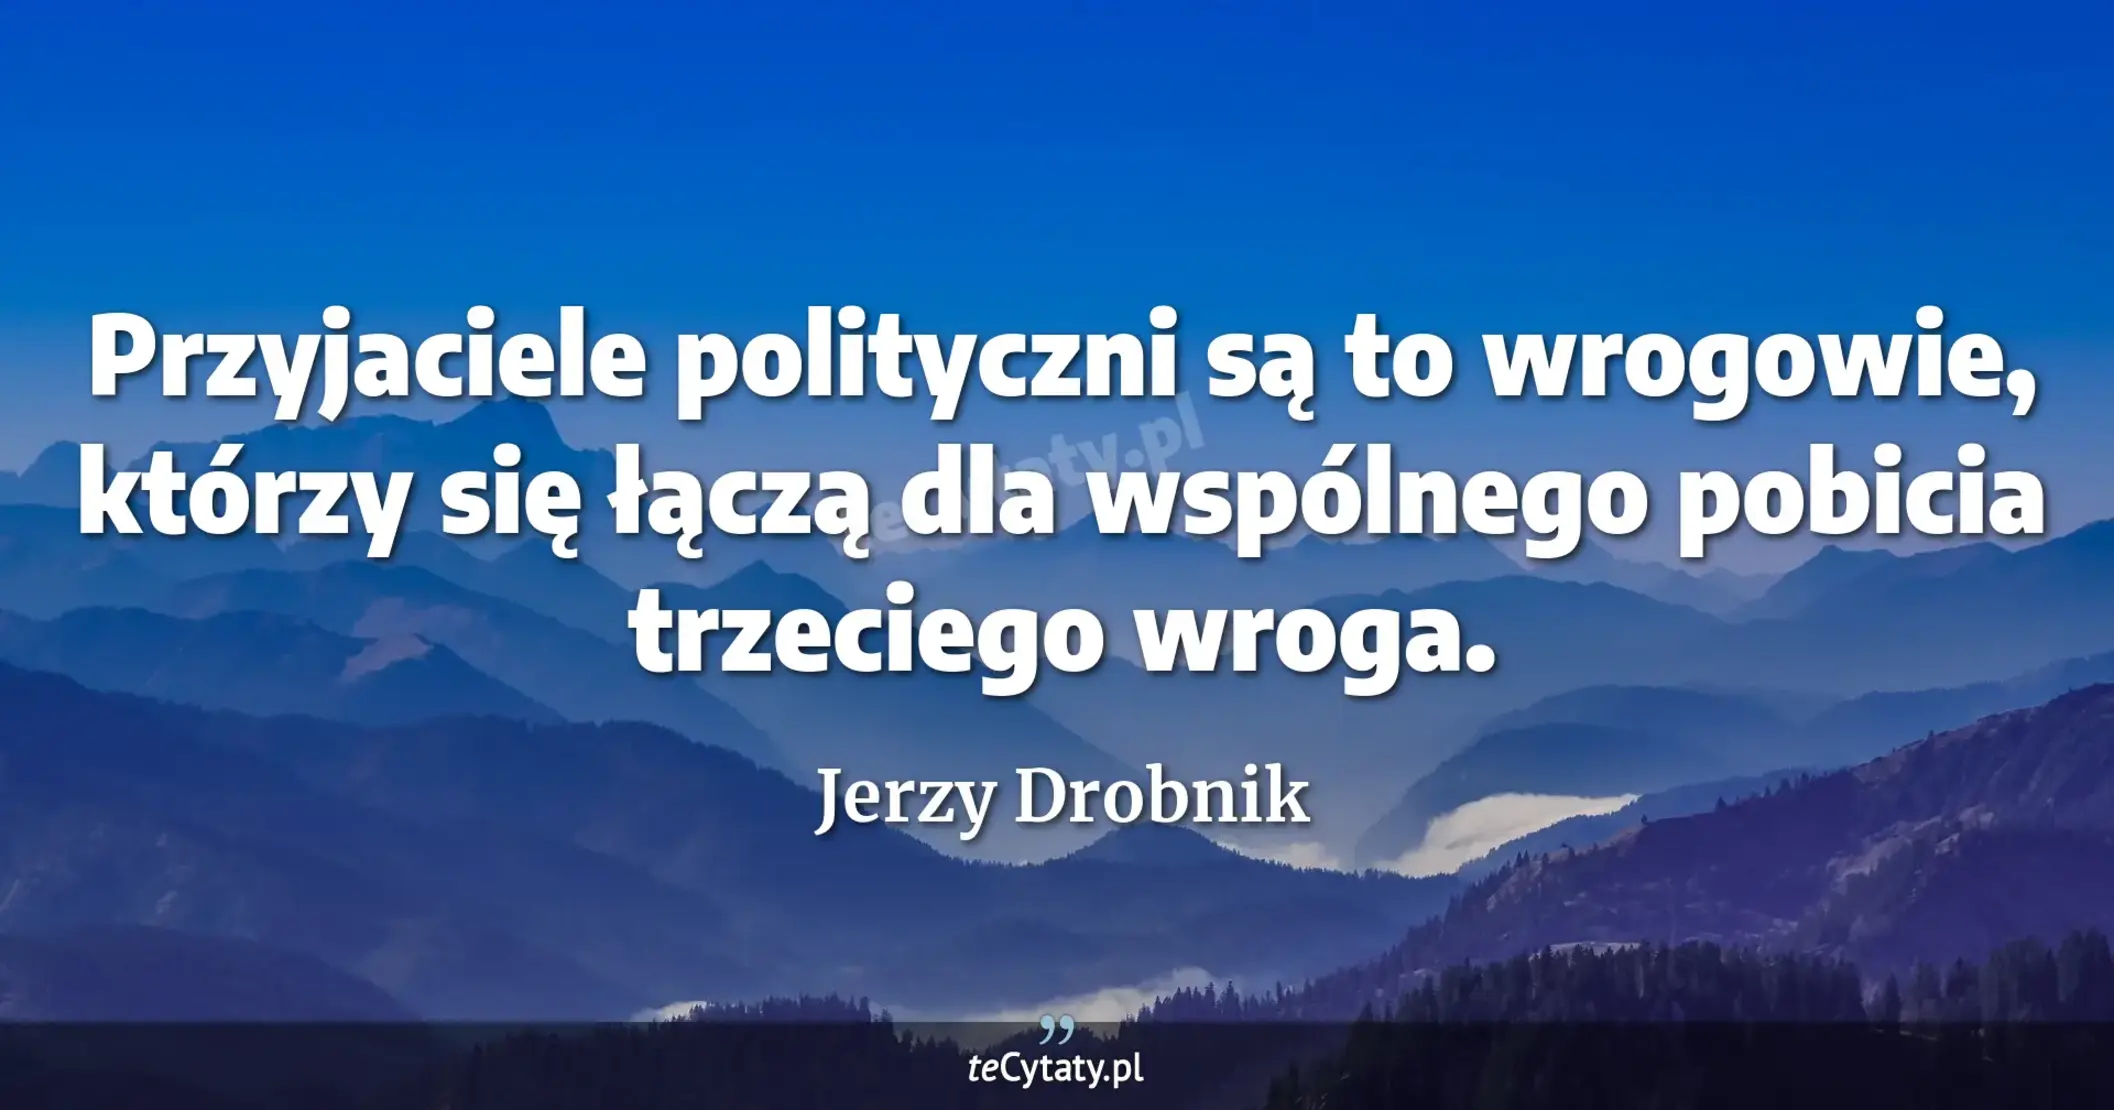 Przyjaciele polityczni są to wrogowie, którzy się łączą dla wspólnego pobicia trzeciego wroga. - Jerzy Drobnik